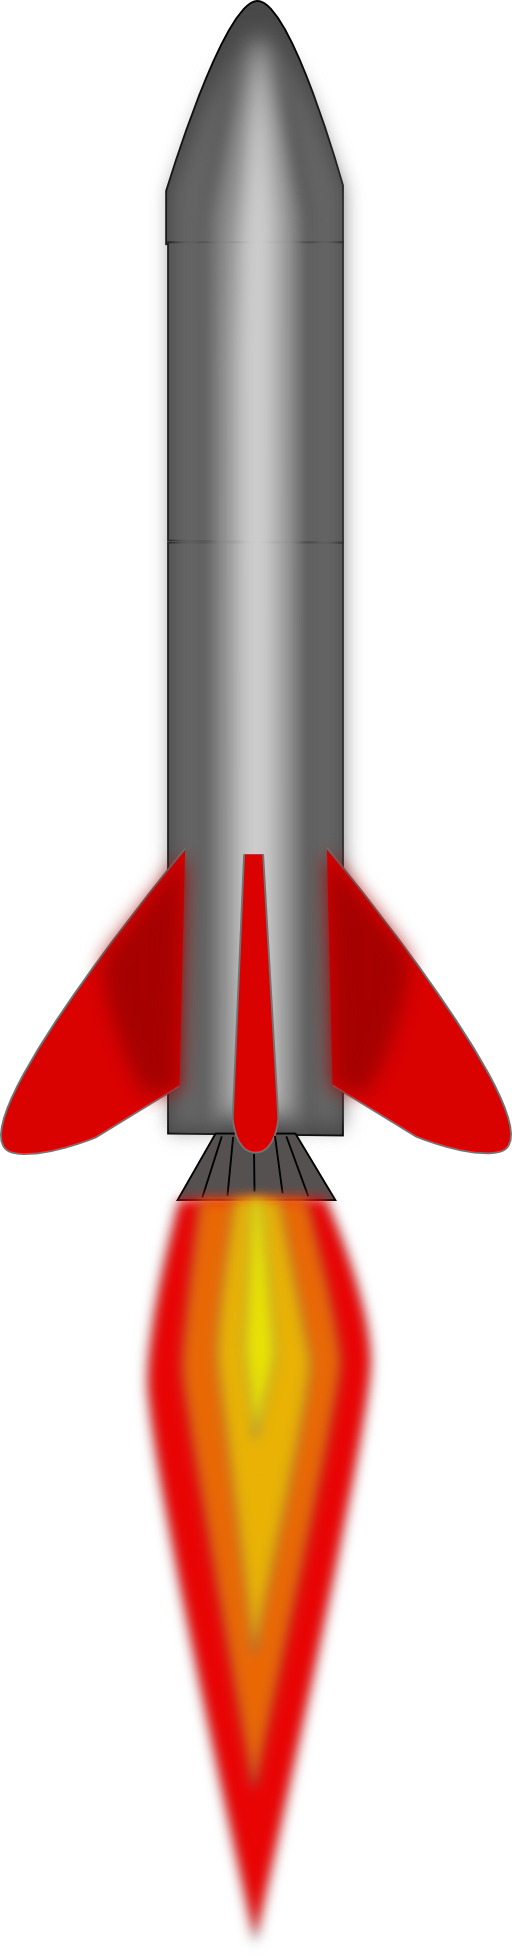 Images For > Rocket Clip Art